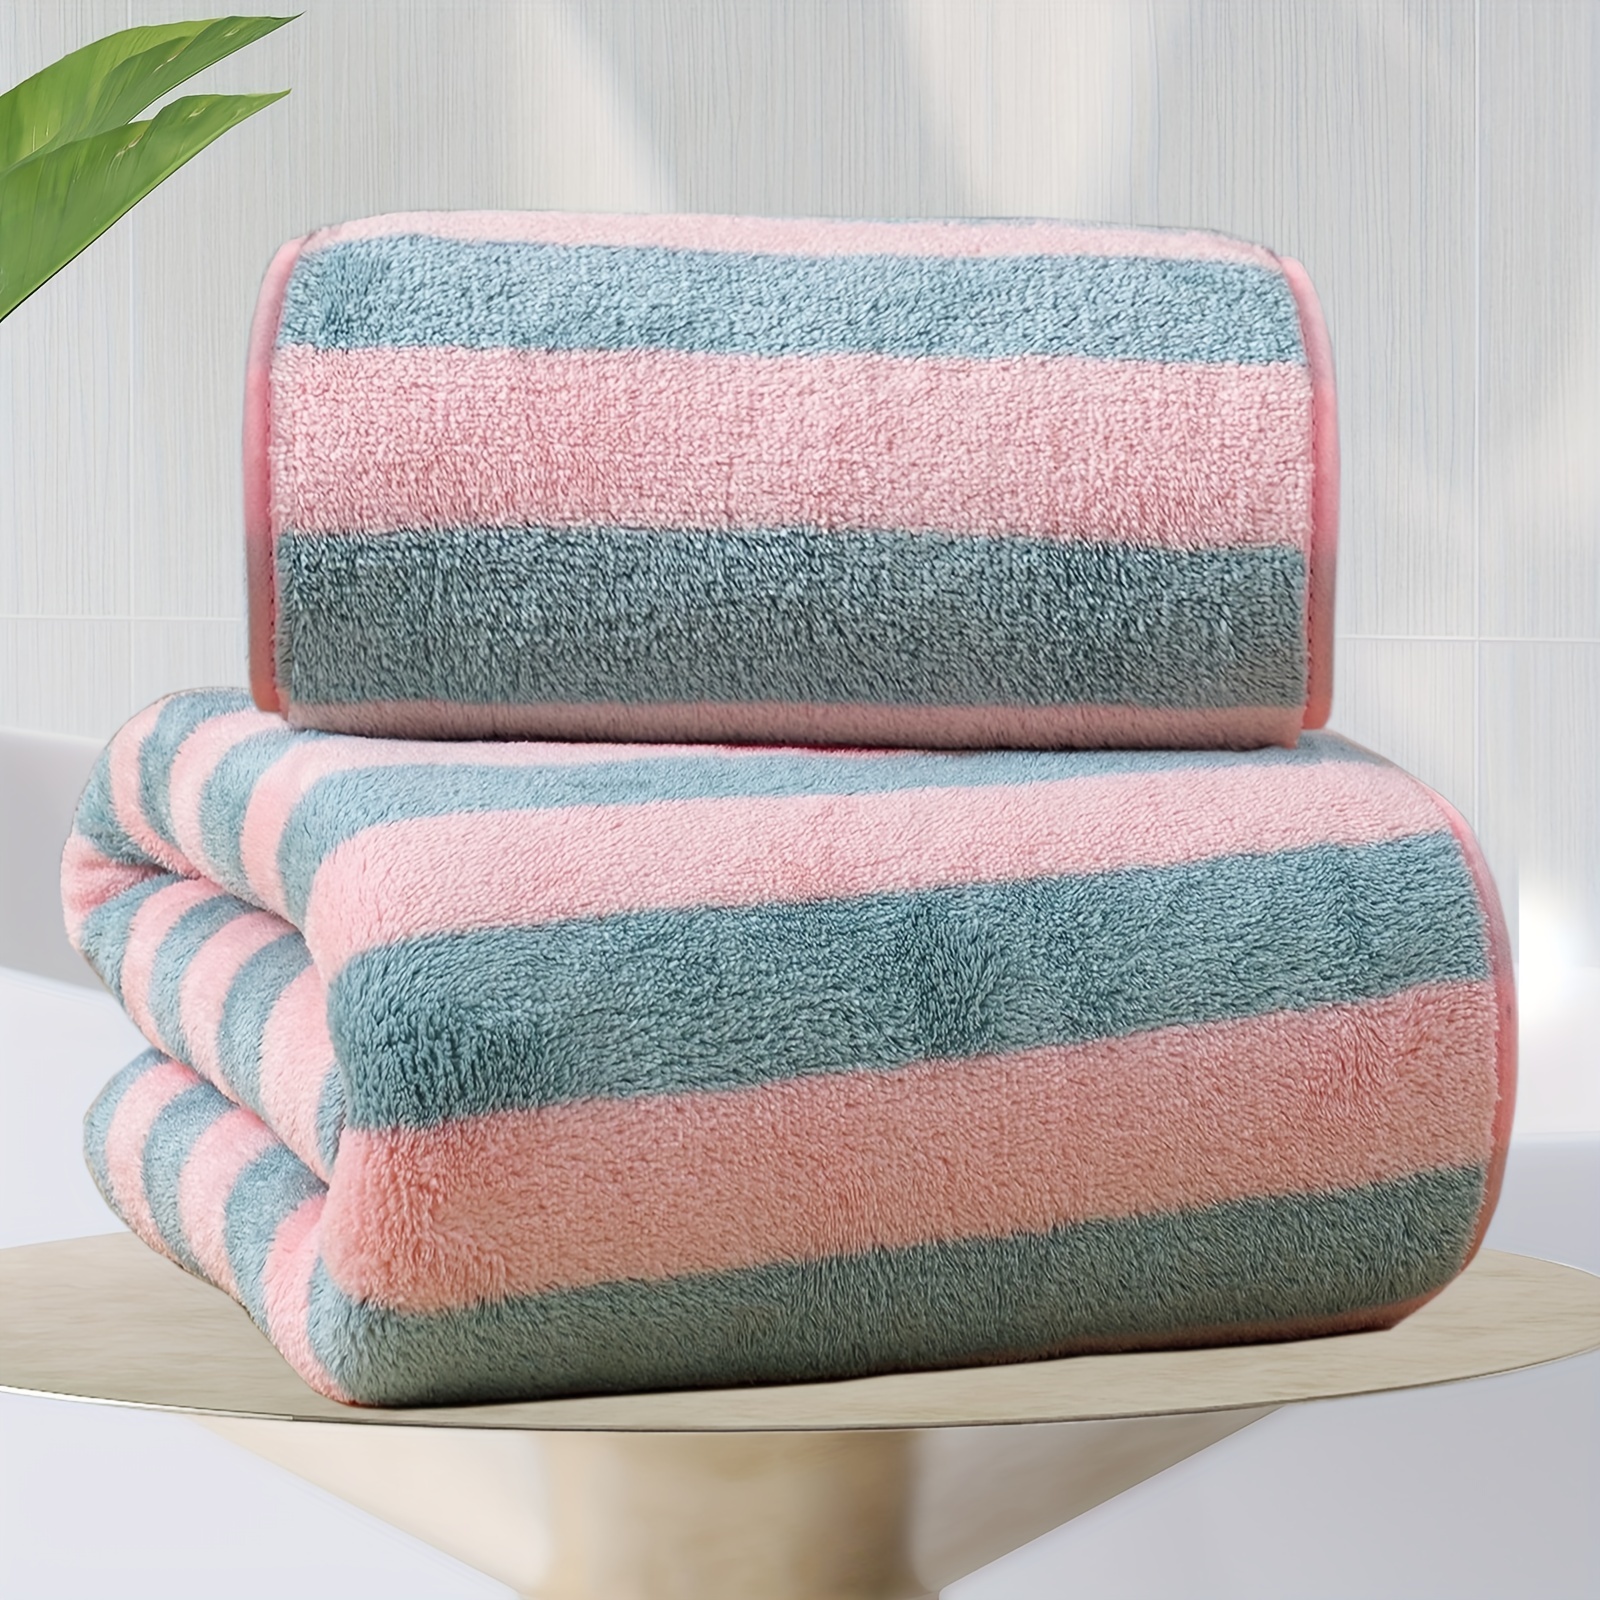 NirvanaShape ® Asciugamano Microfibra, 14 colori, 8 taglie, Asciugatura  Rapida, Leggero, Assorbente, Asciugamano da Viaggio/Asciugamano da Bagno